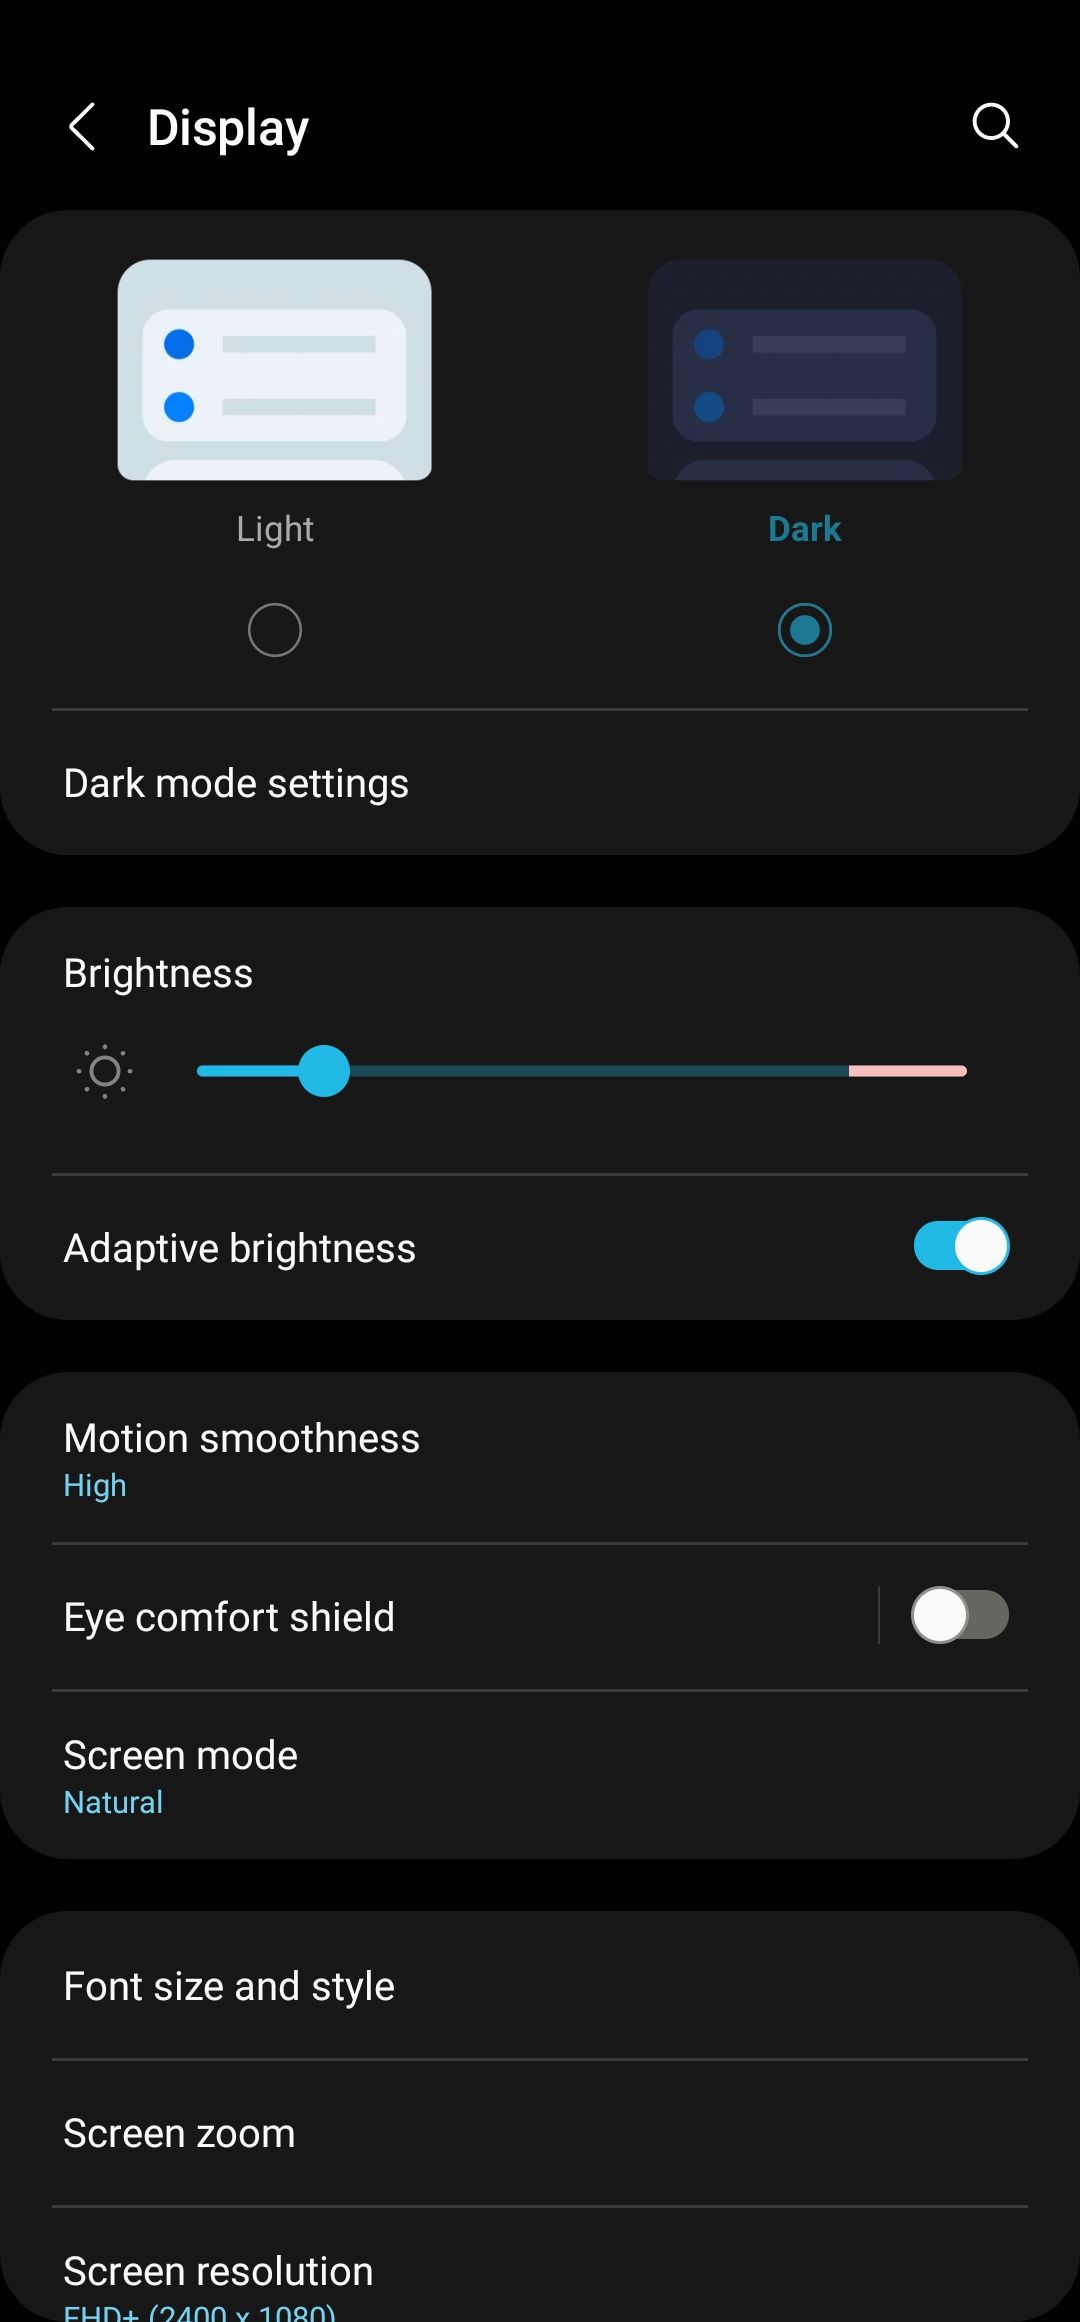 Click Dark to enable dark mode on Samsung